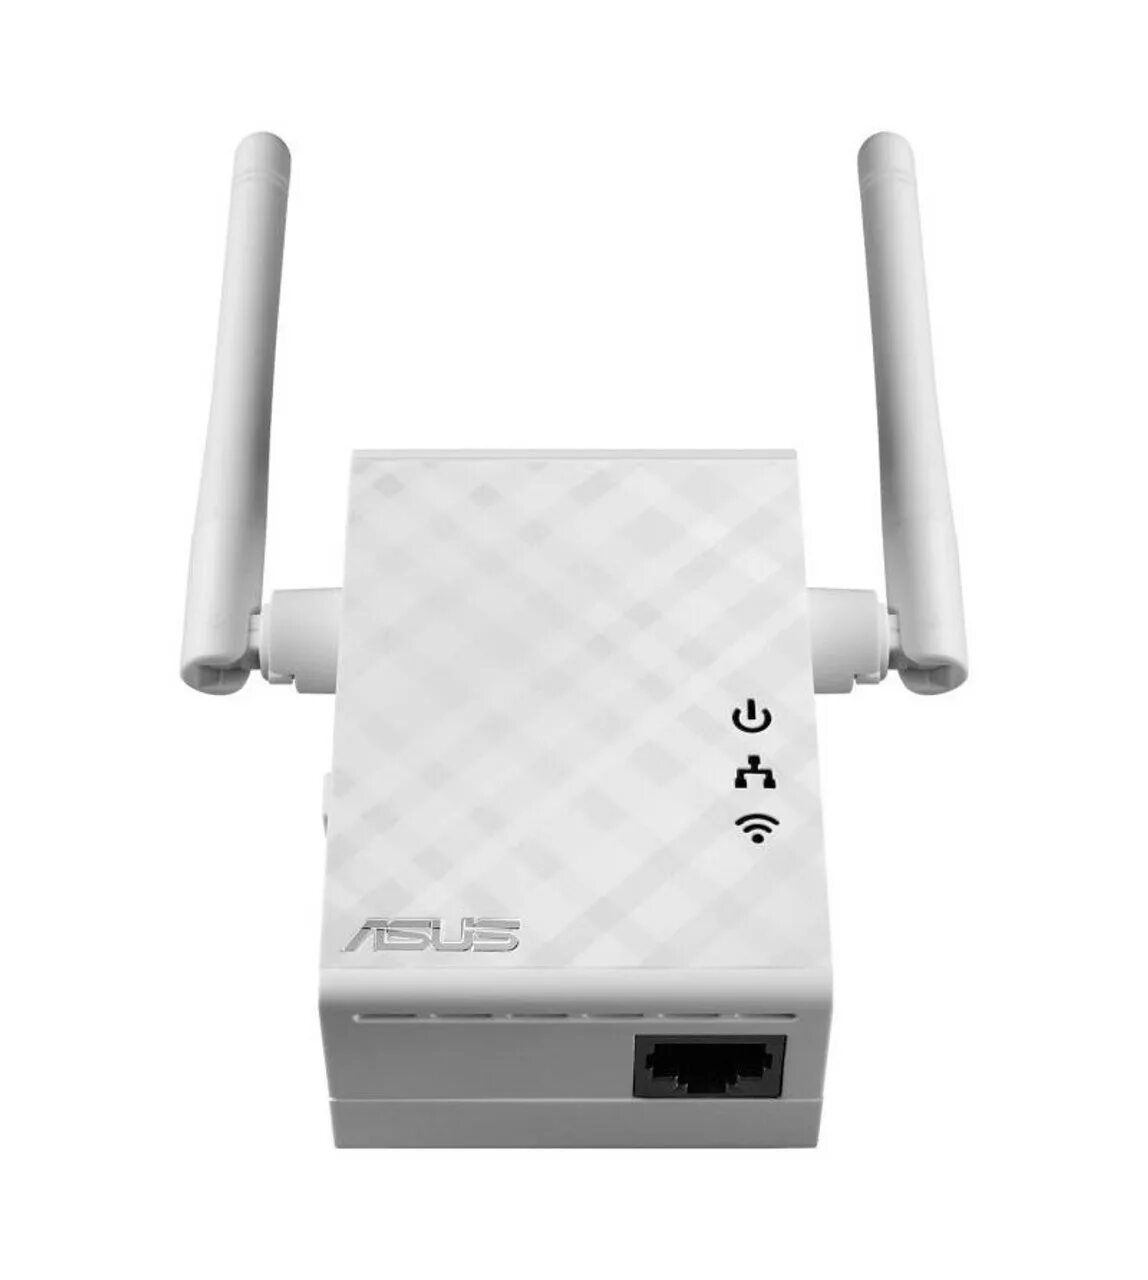 Роутер Wi-Fi ASUS Rp-n12. Усилитель Wi-Fi ASUS Rp-n12. Репитер ASUS Rp-n12. Wi-Fi усилитель сигнала (репитер) ASUS Rp-n12. Купить усилитель для роутера wifi